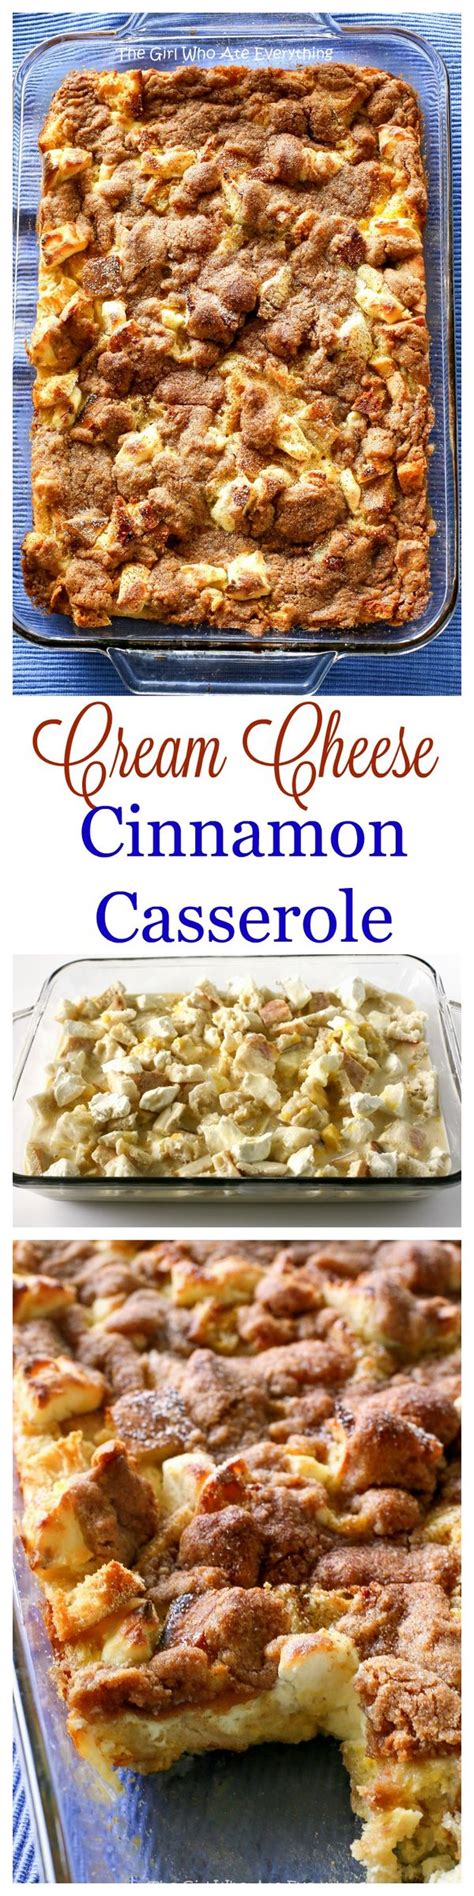 Cream Cheese Cinnamon Casserole